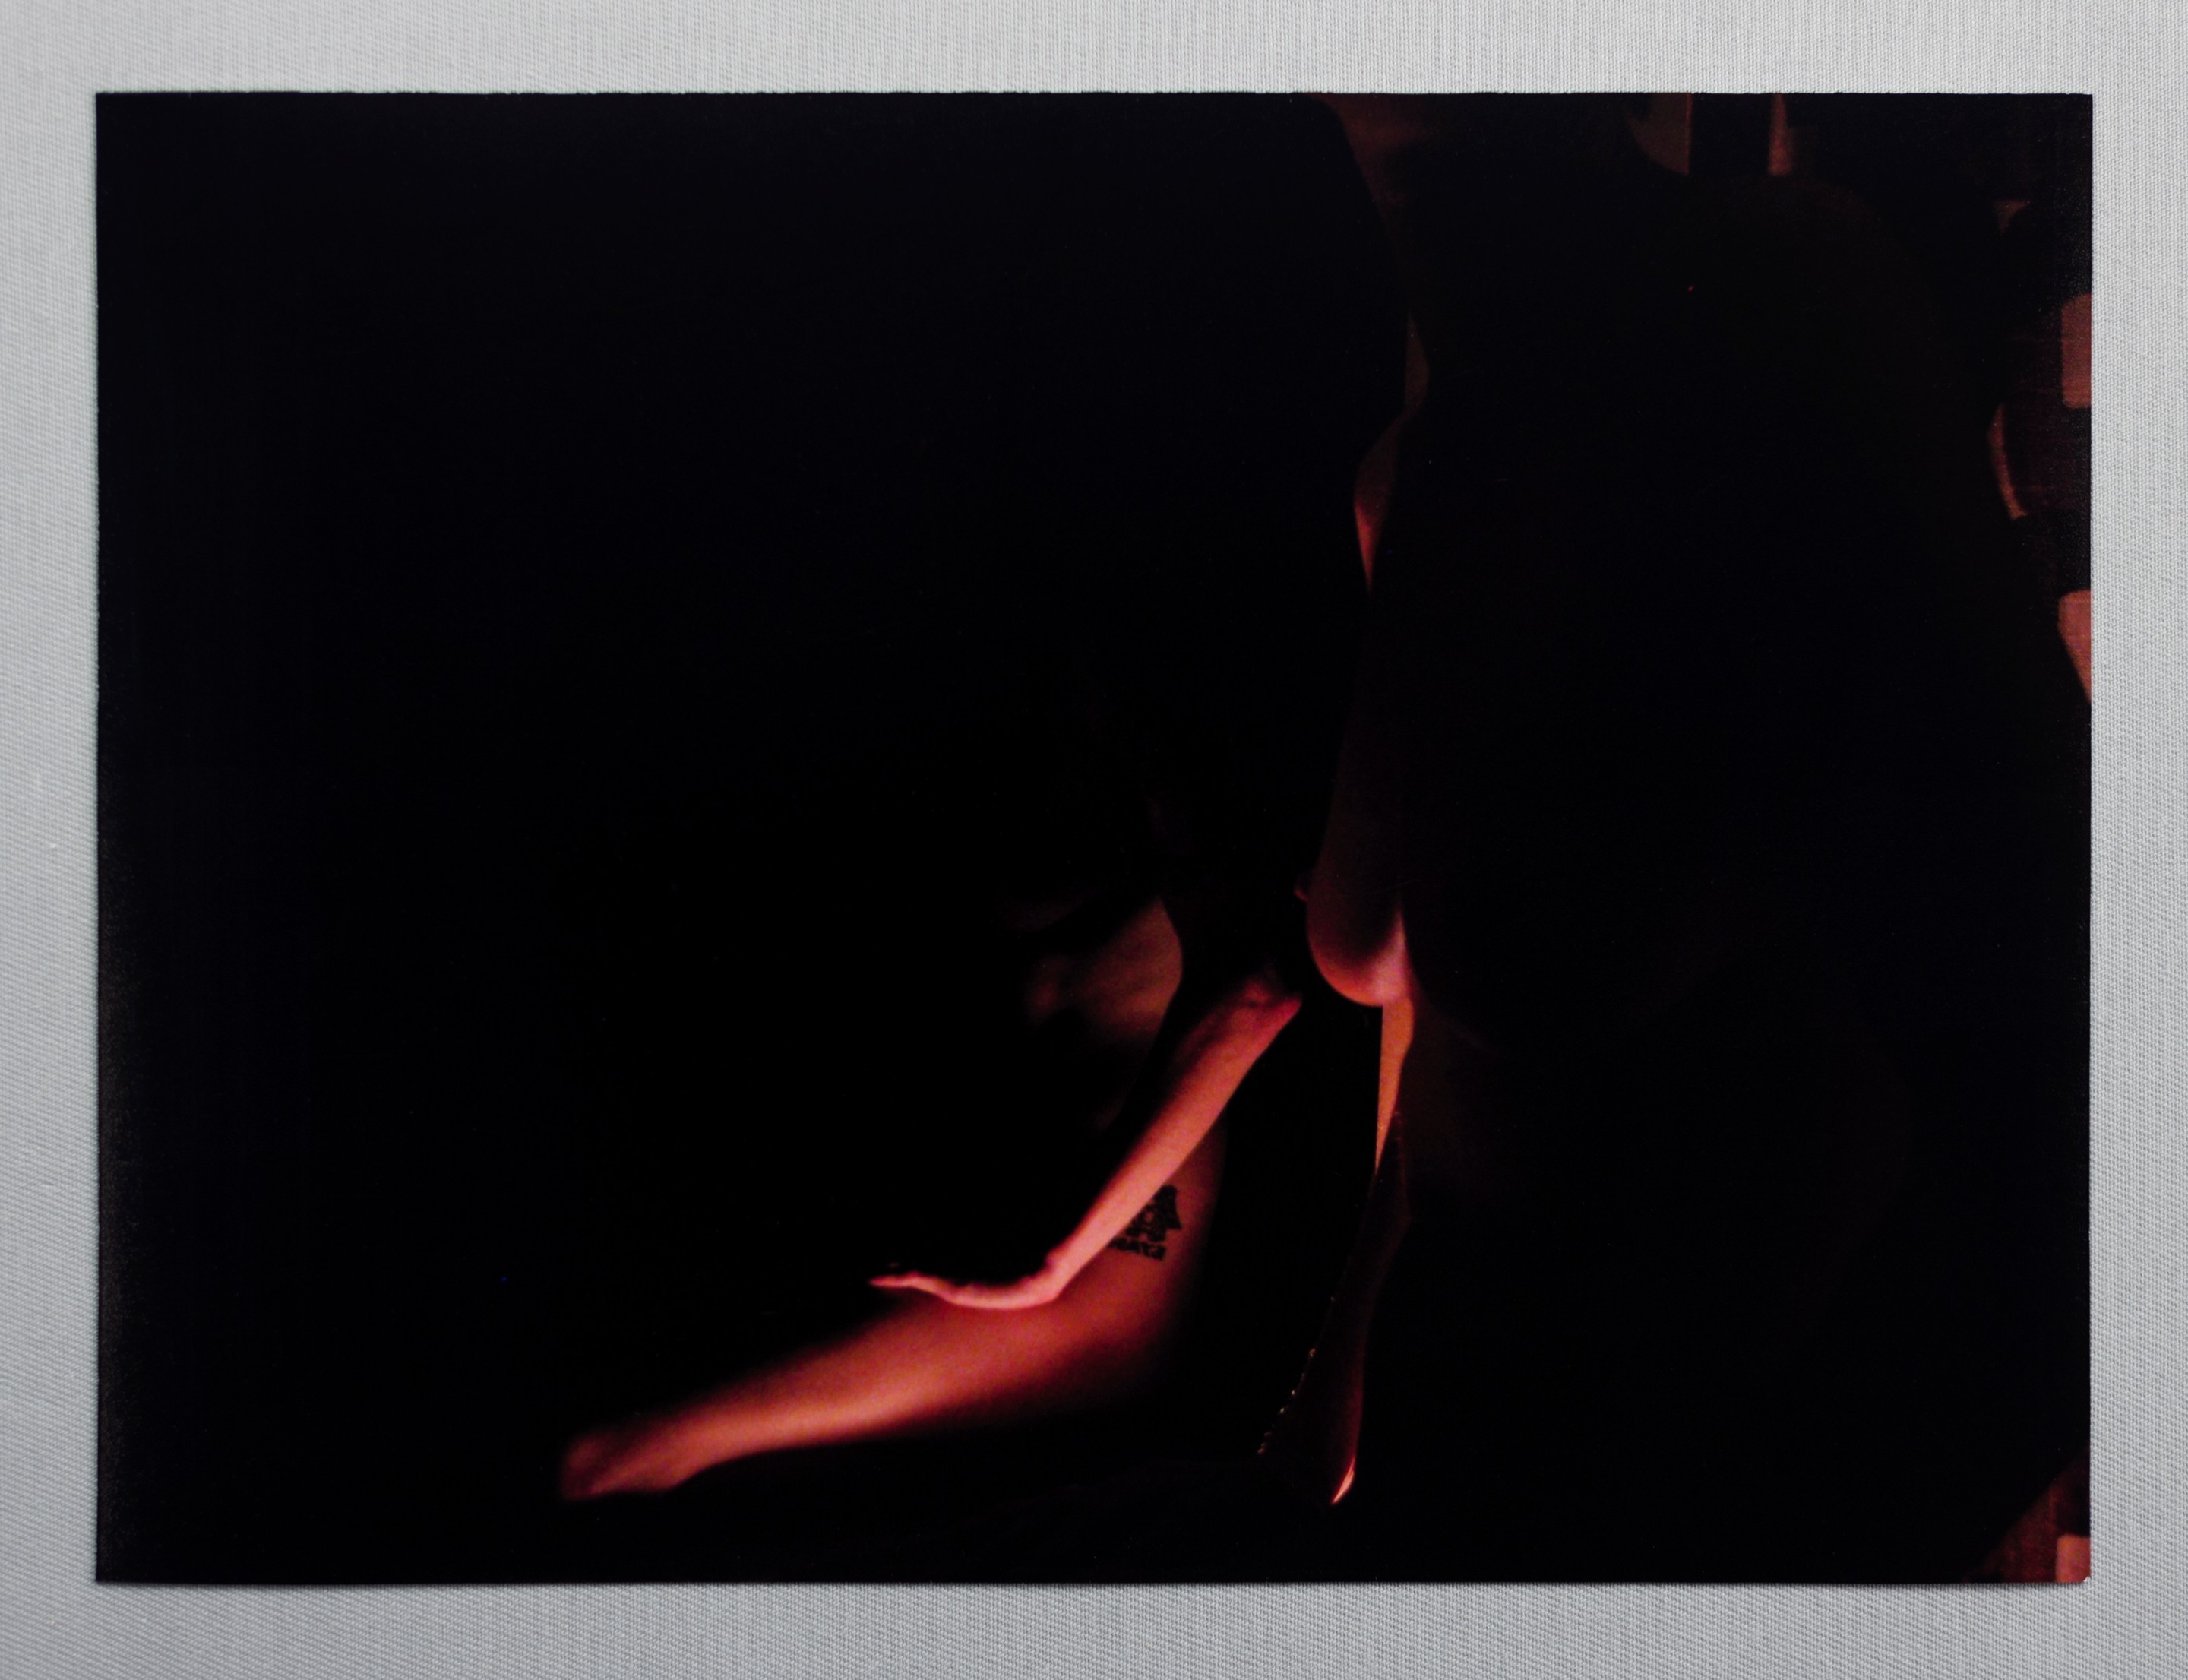 Monica Majoli - Primary Materials for Black Mirror (2009 - 2012). Archival pigment print. 7h x 10w inches.